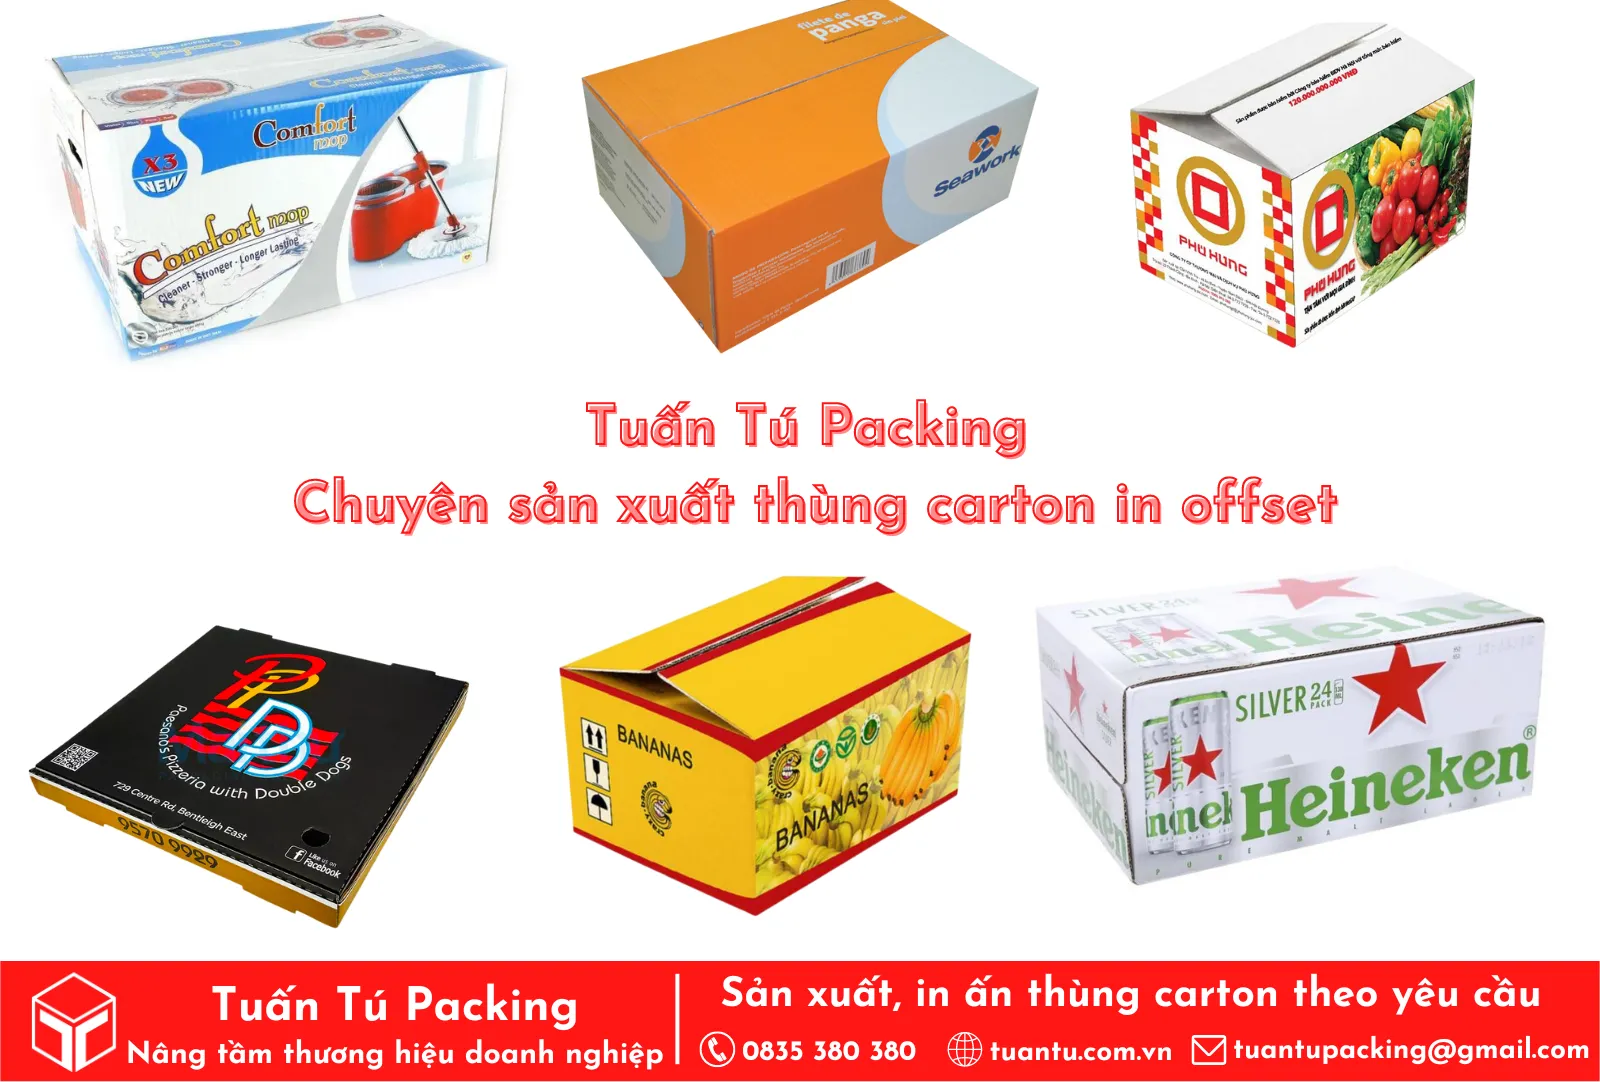 Tuấn Tú Packing - Chuyên in ấn thùng carton in offset